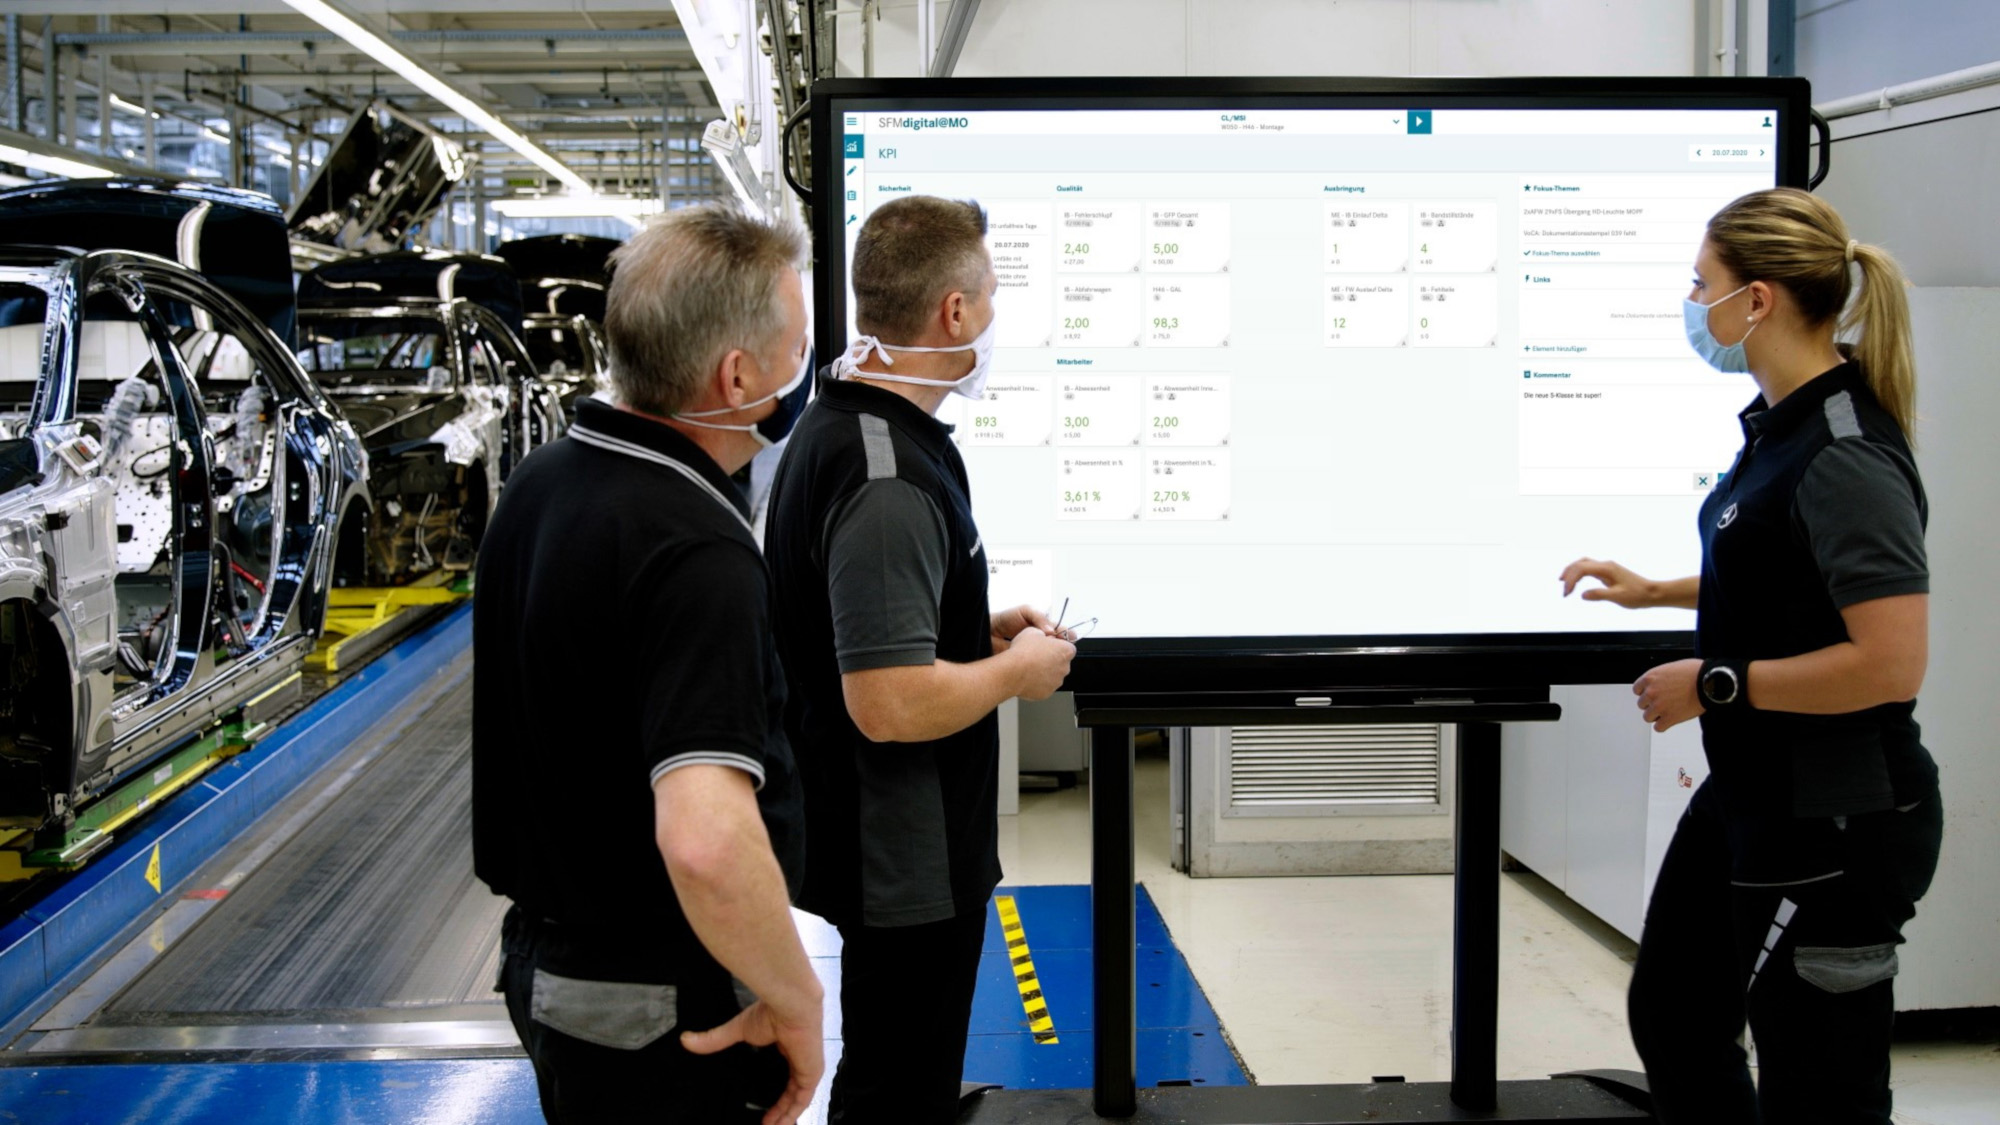 Digitales Mercedes-Benz Produktions-Ökosystem MO360: Das Tool Shopfloormanagement zeigt produktions- und steuerungsrelevante Kennzahlen an. (Bild: Daimler AG)